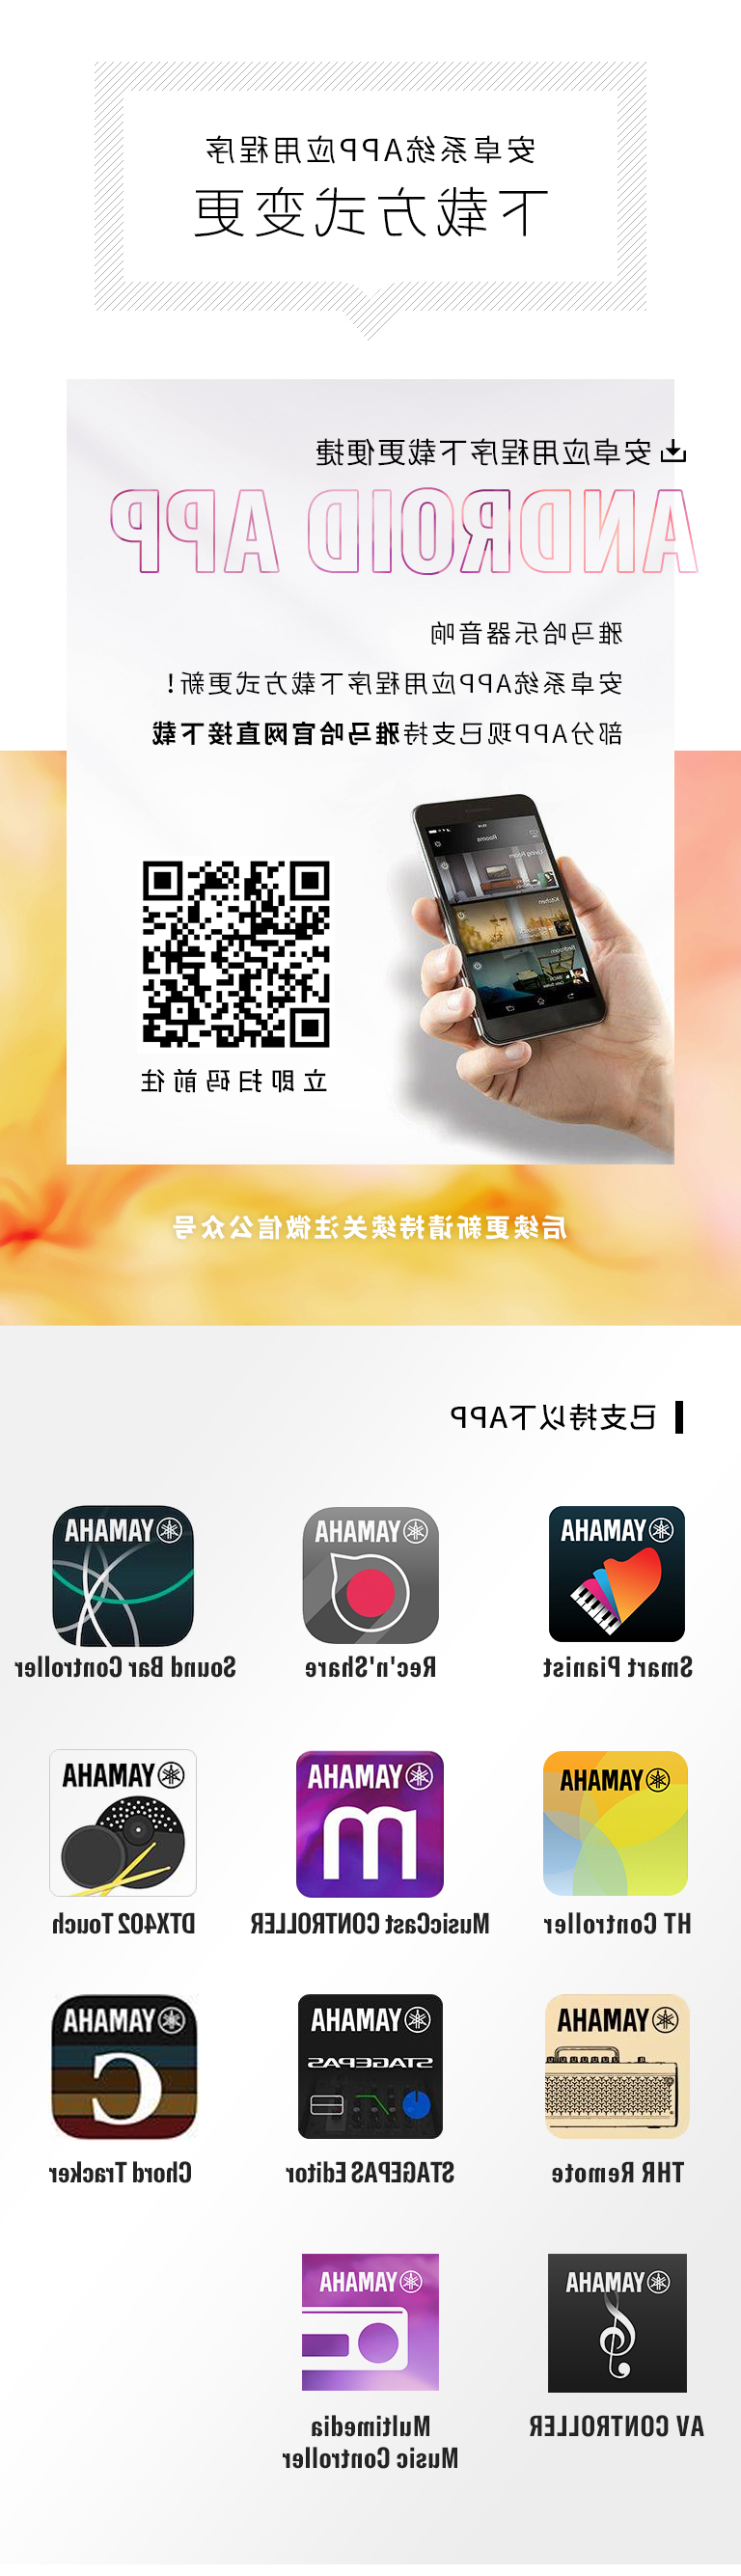 乐鱼全站app下载-乐鱼体育app在线下载
安卓系统应用程序 下载方式变更